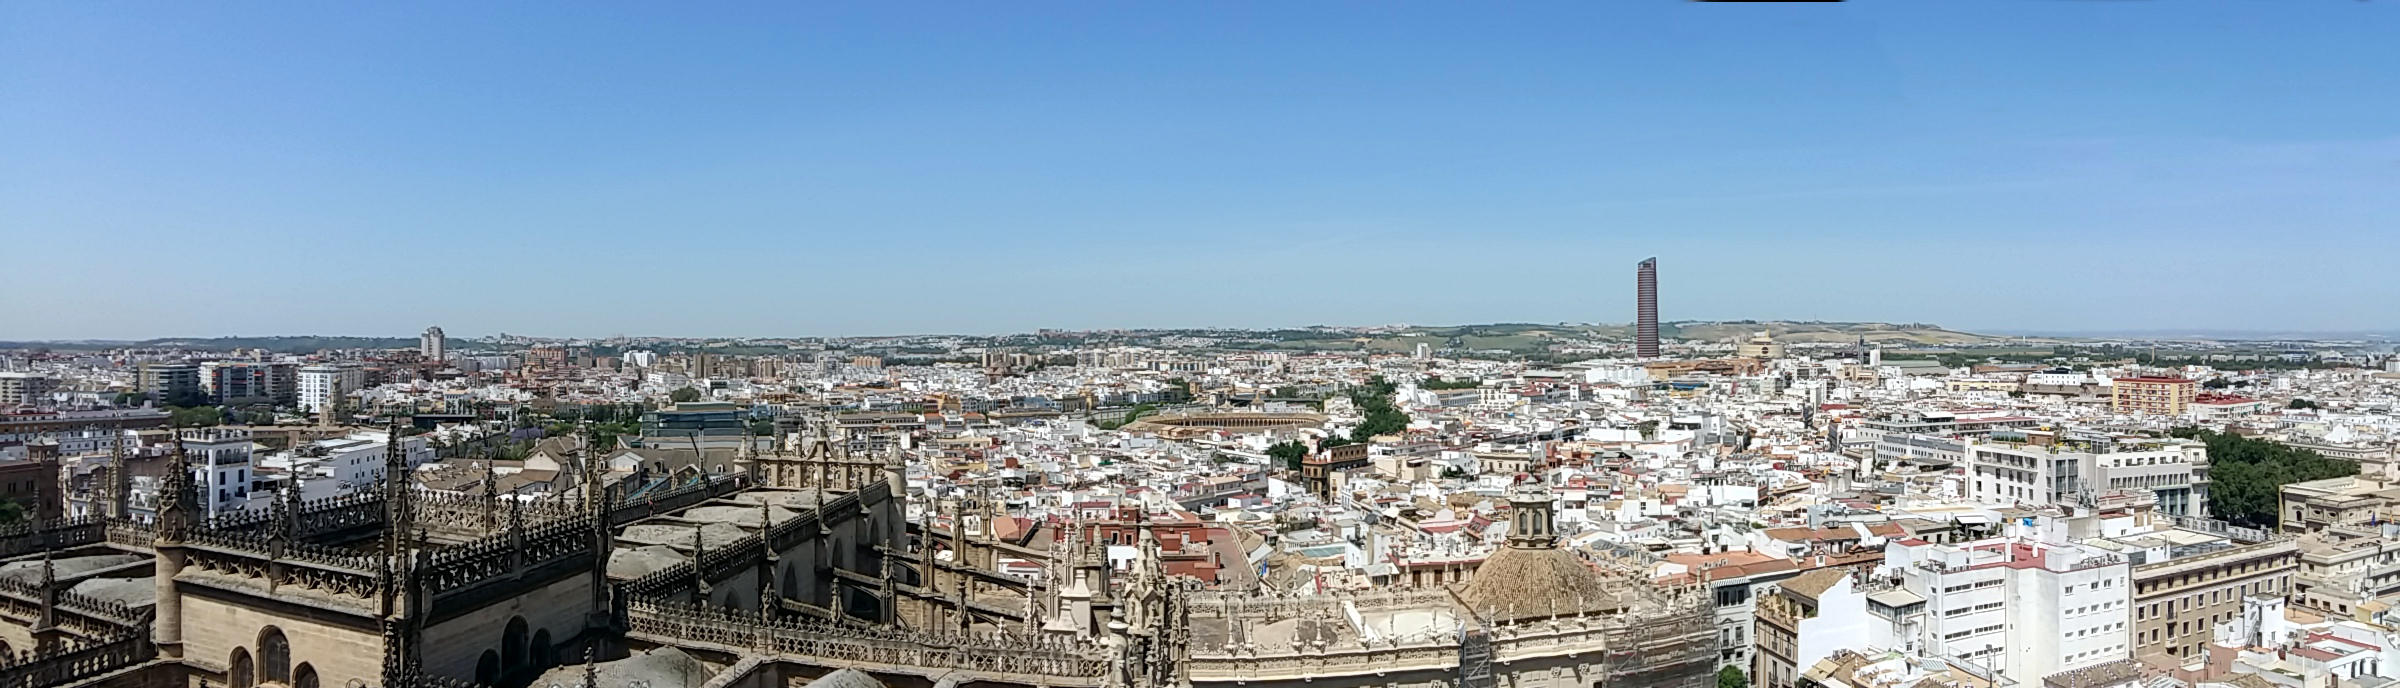 Catedral de Santa Mara de la Sede (1401-1519) - Hauptschiff mit Kuppel und Querschiff, im Hintergrund Plaza de Toros und Torre Sevilla (Blickrichtung West)